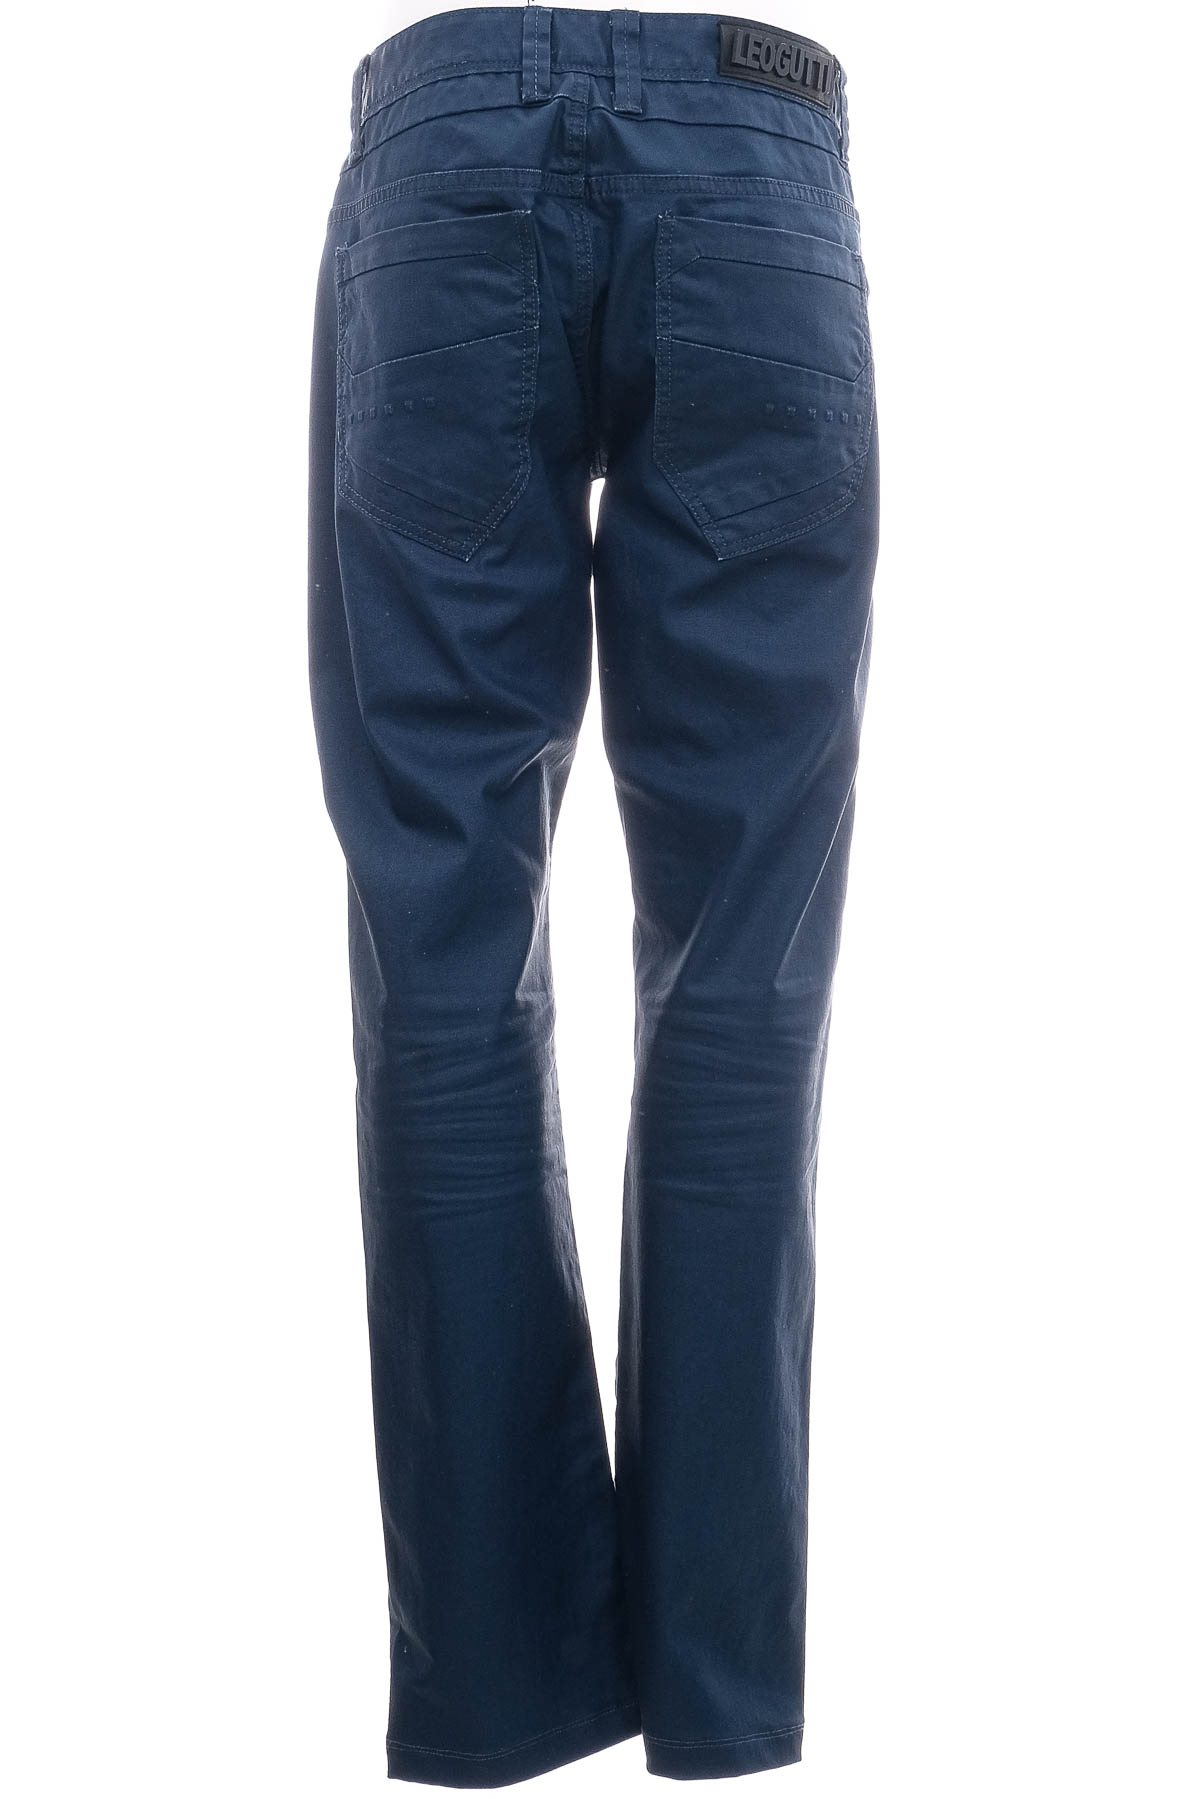 Jeans pentru bărbăți - Leo Gutti - 1